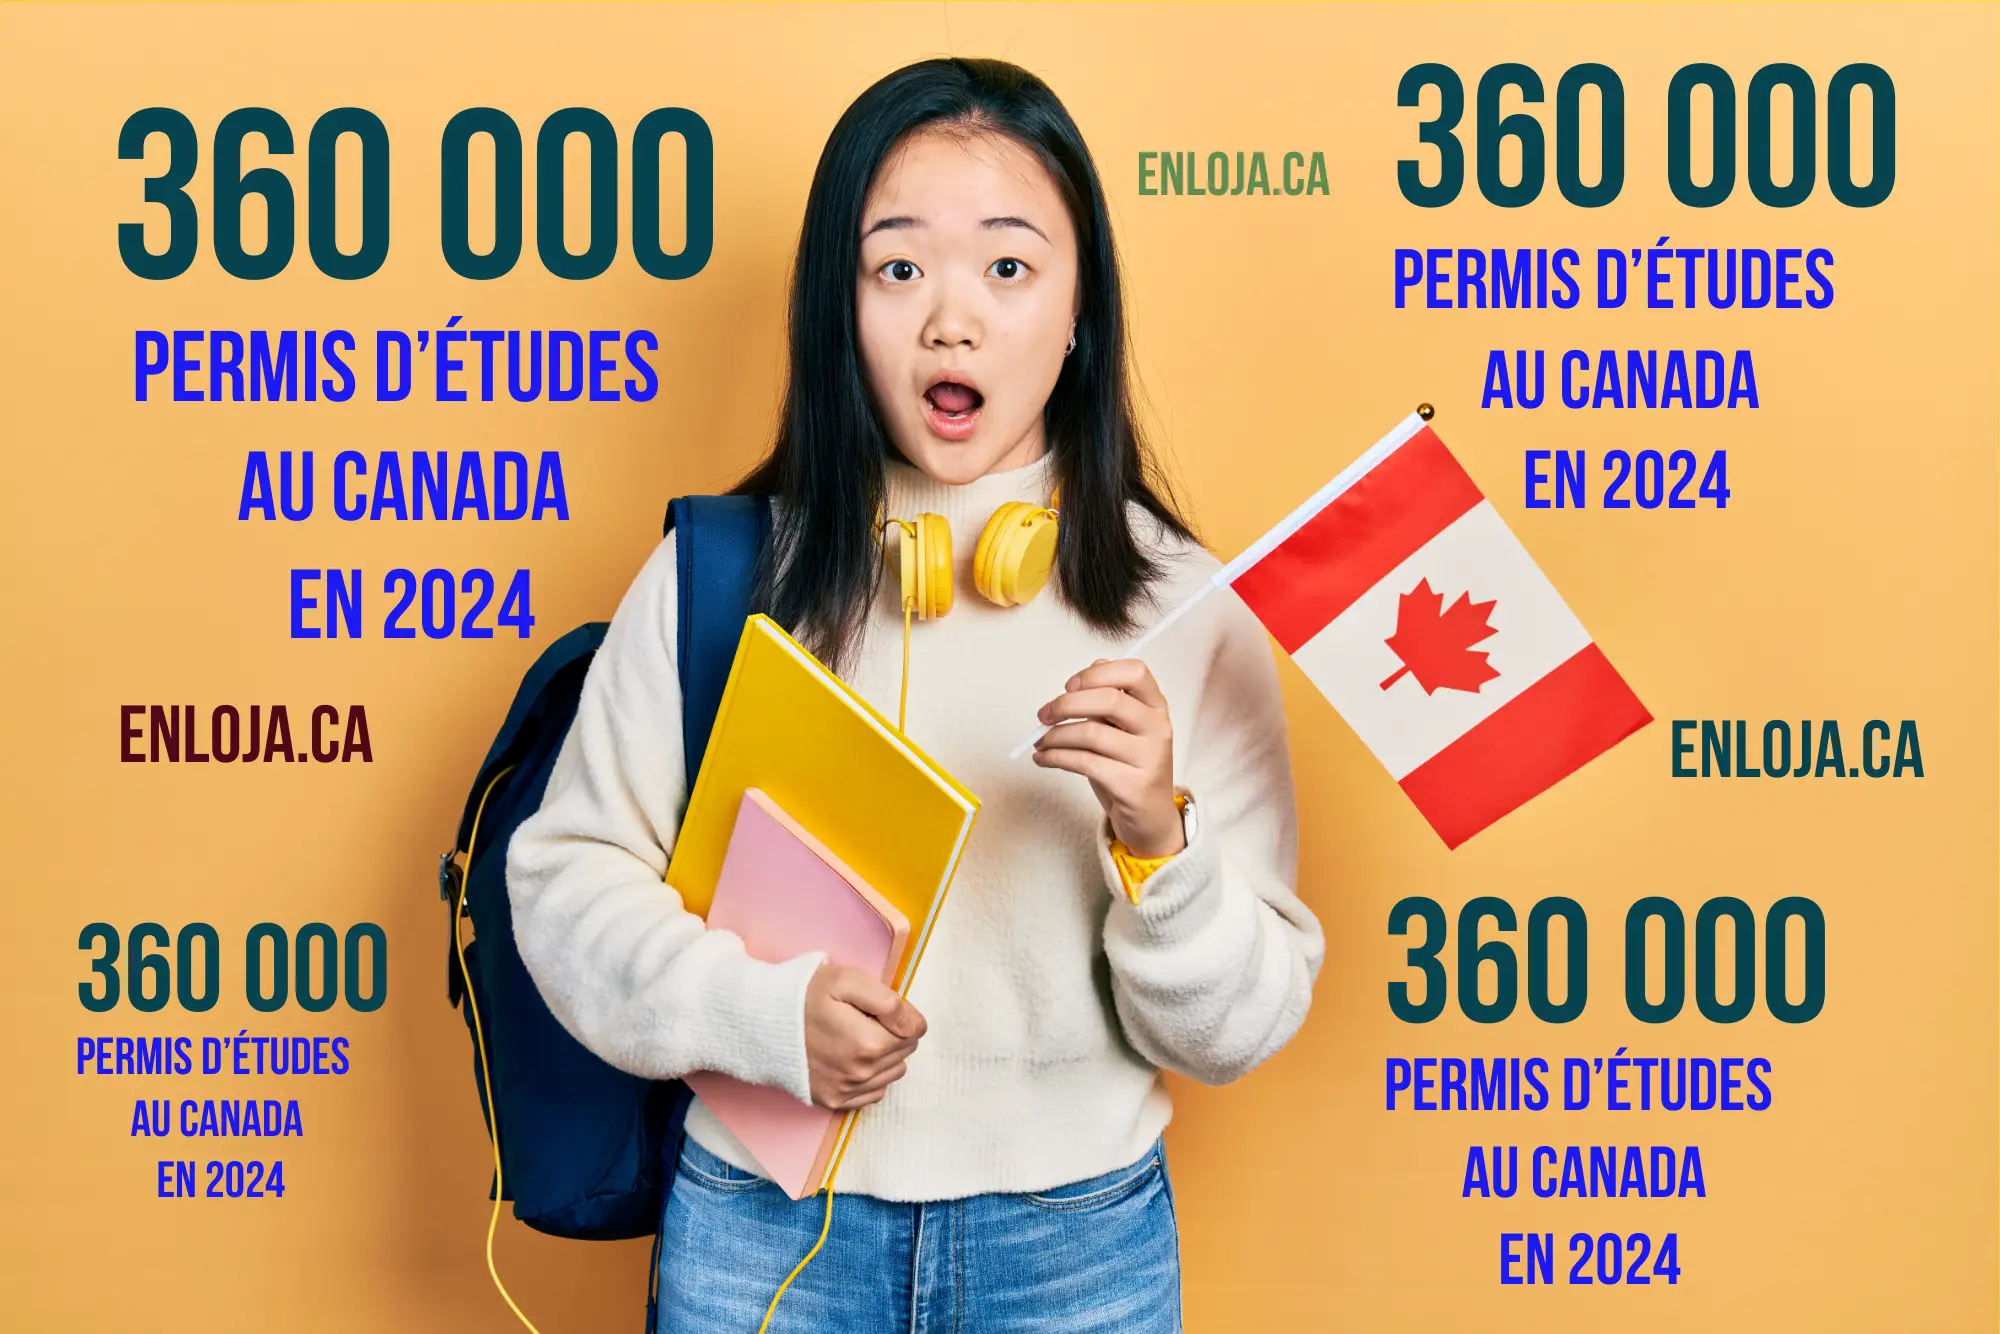 Le Canada Va Délivrer 360 000 Permis d’Études En 2024